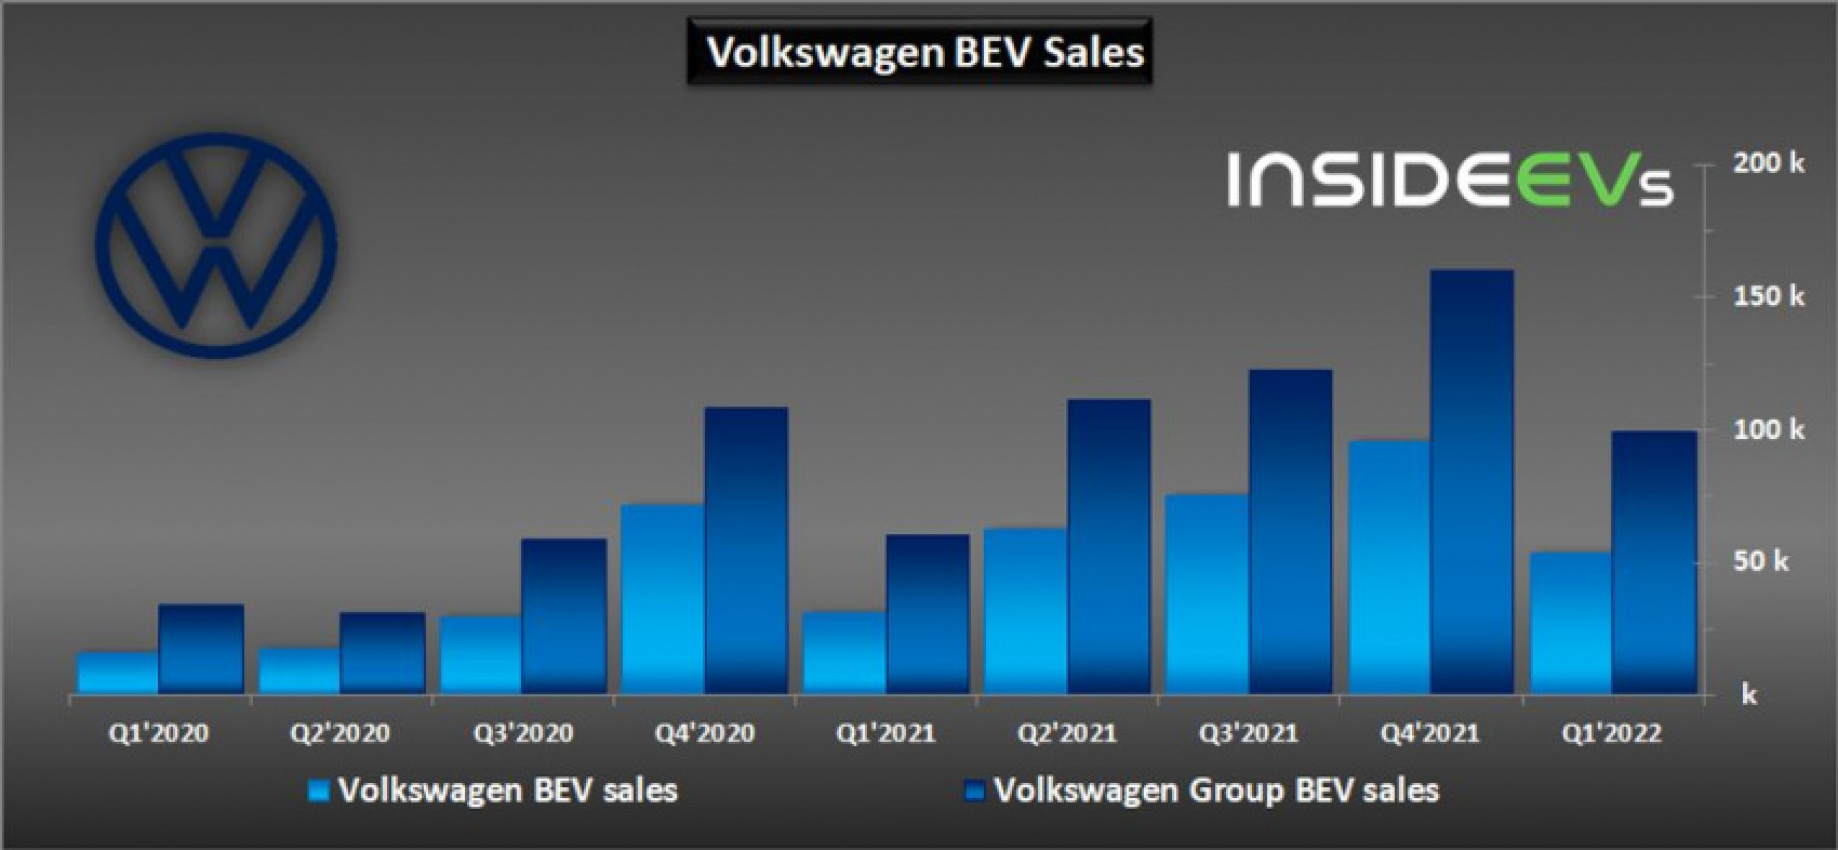 autos, cars, evs, volkswagen, volkswagen group global bev sales in q1 2022: almost 100,000